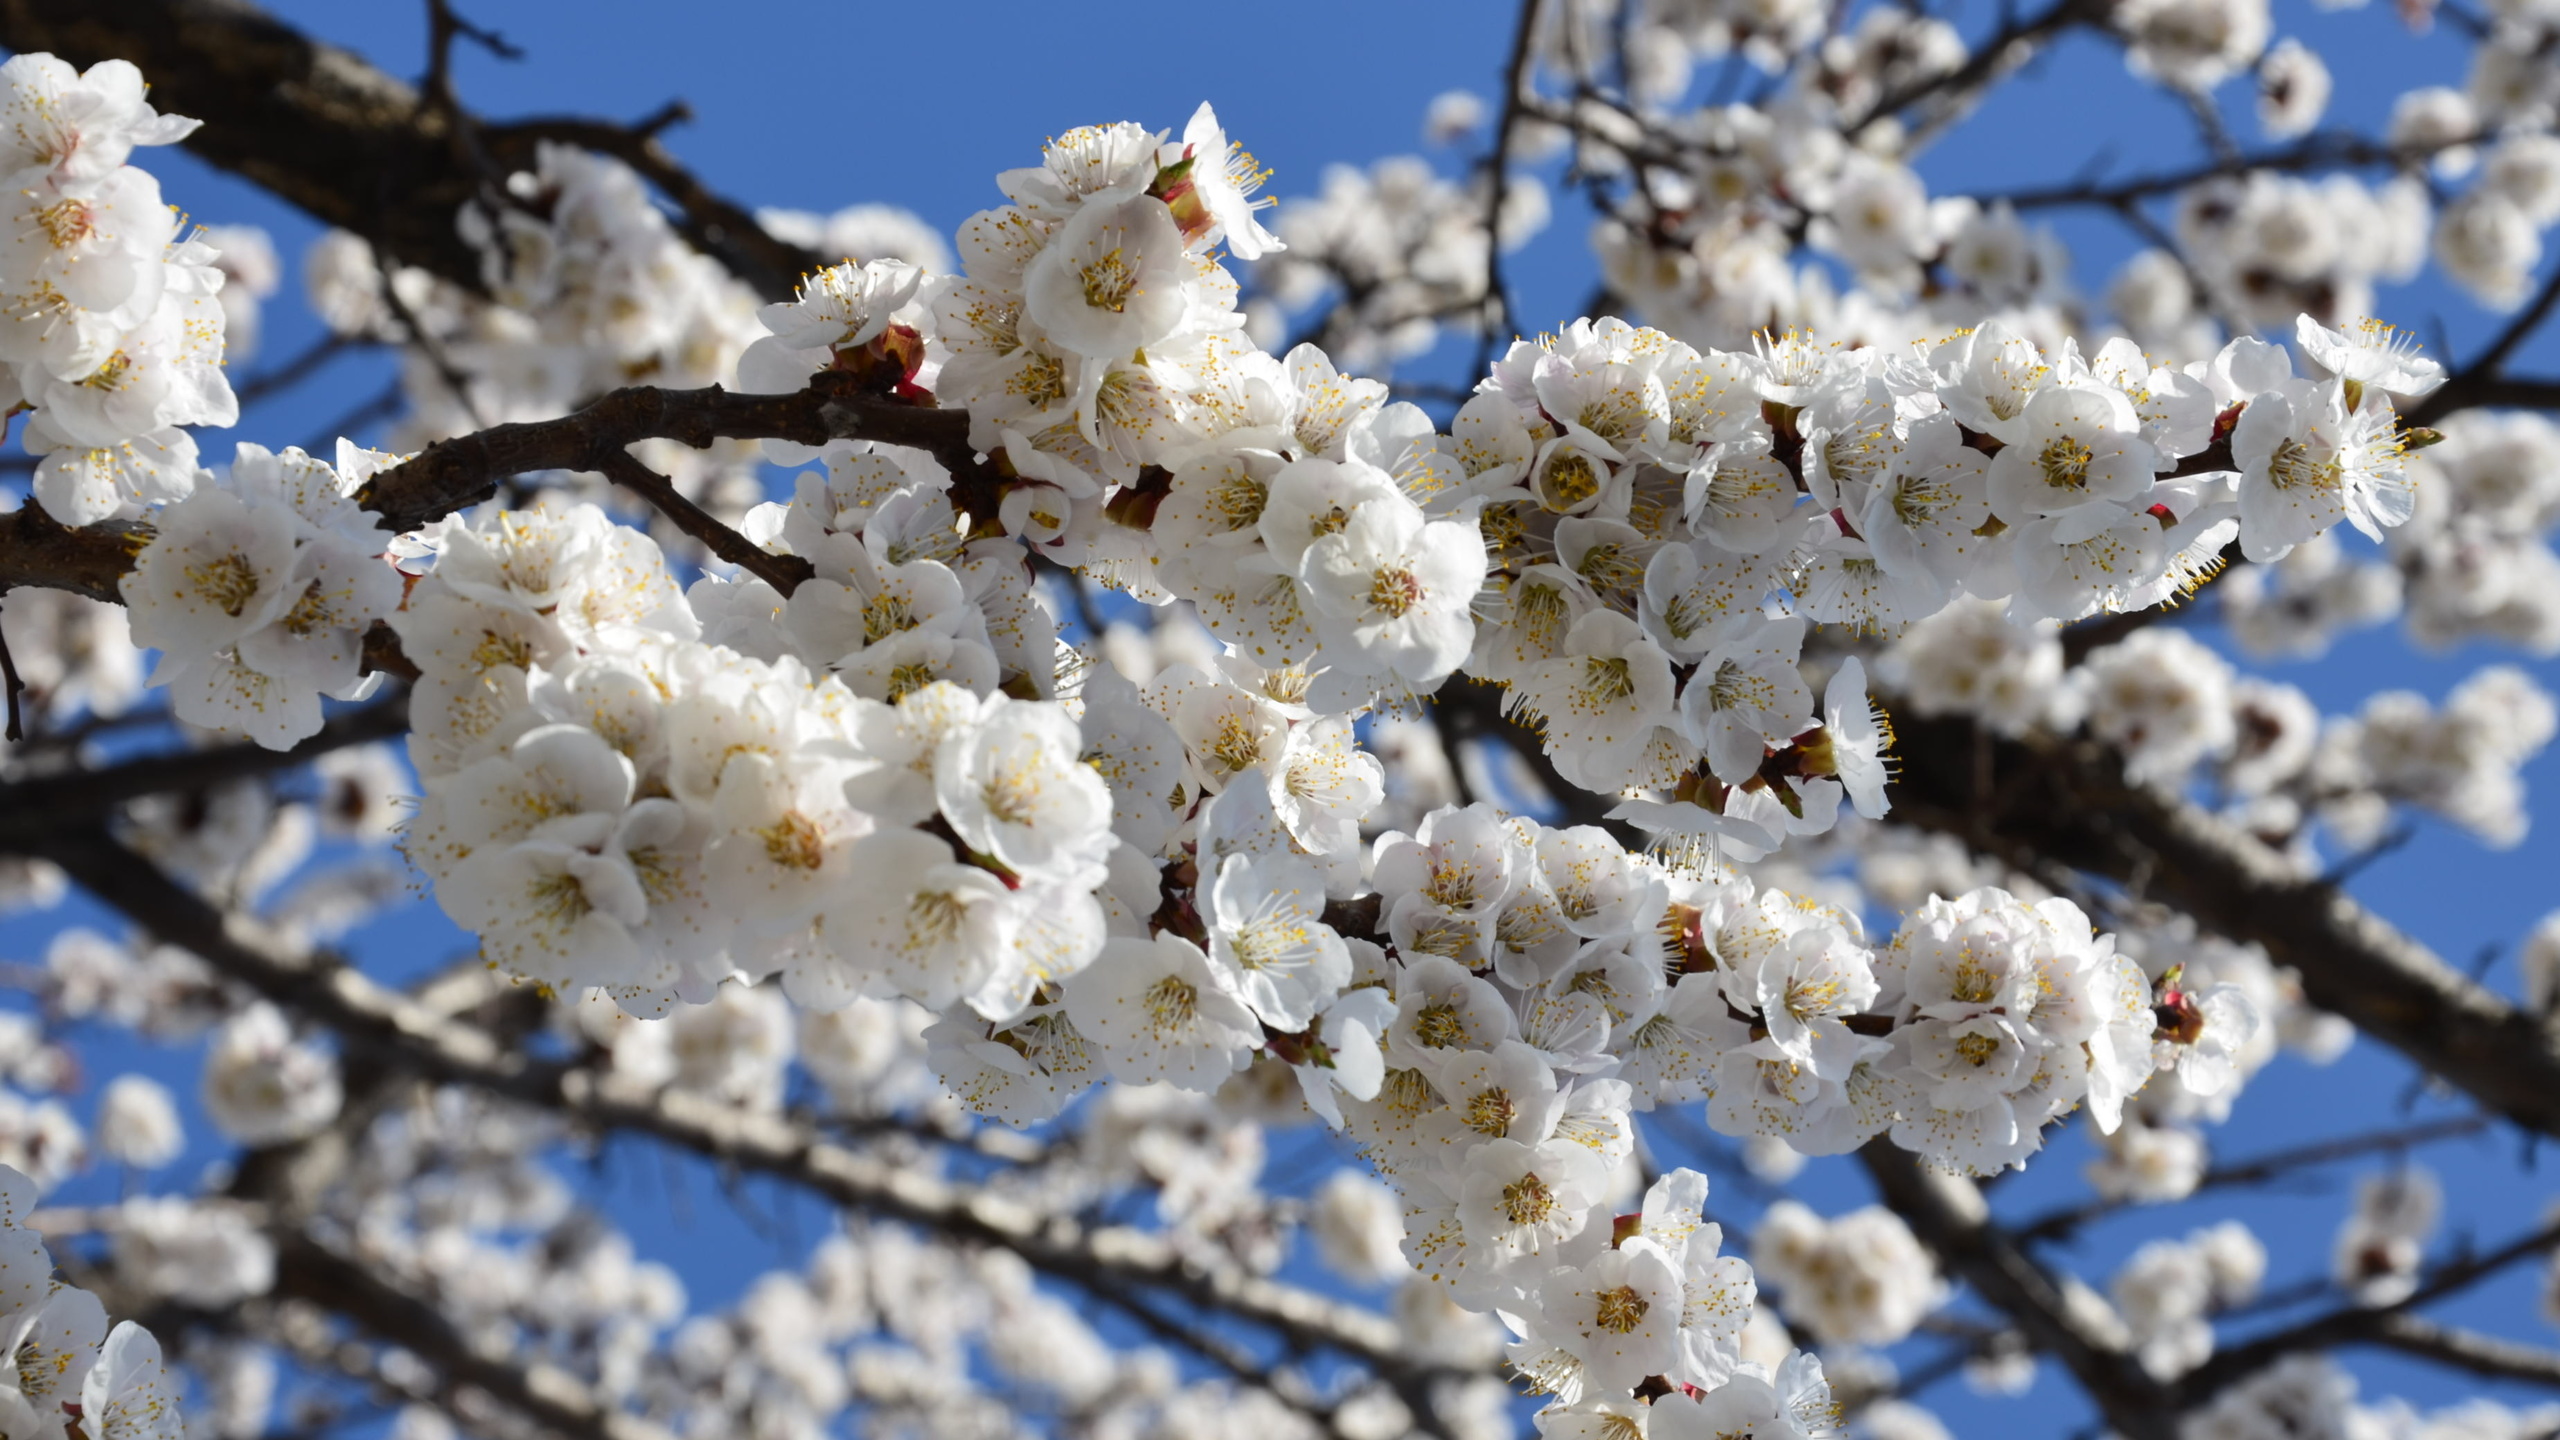 Vesna. Цветущий абрикос. Весна. Природа весной. Весеннее цветение деревьев.